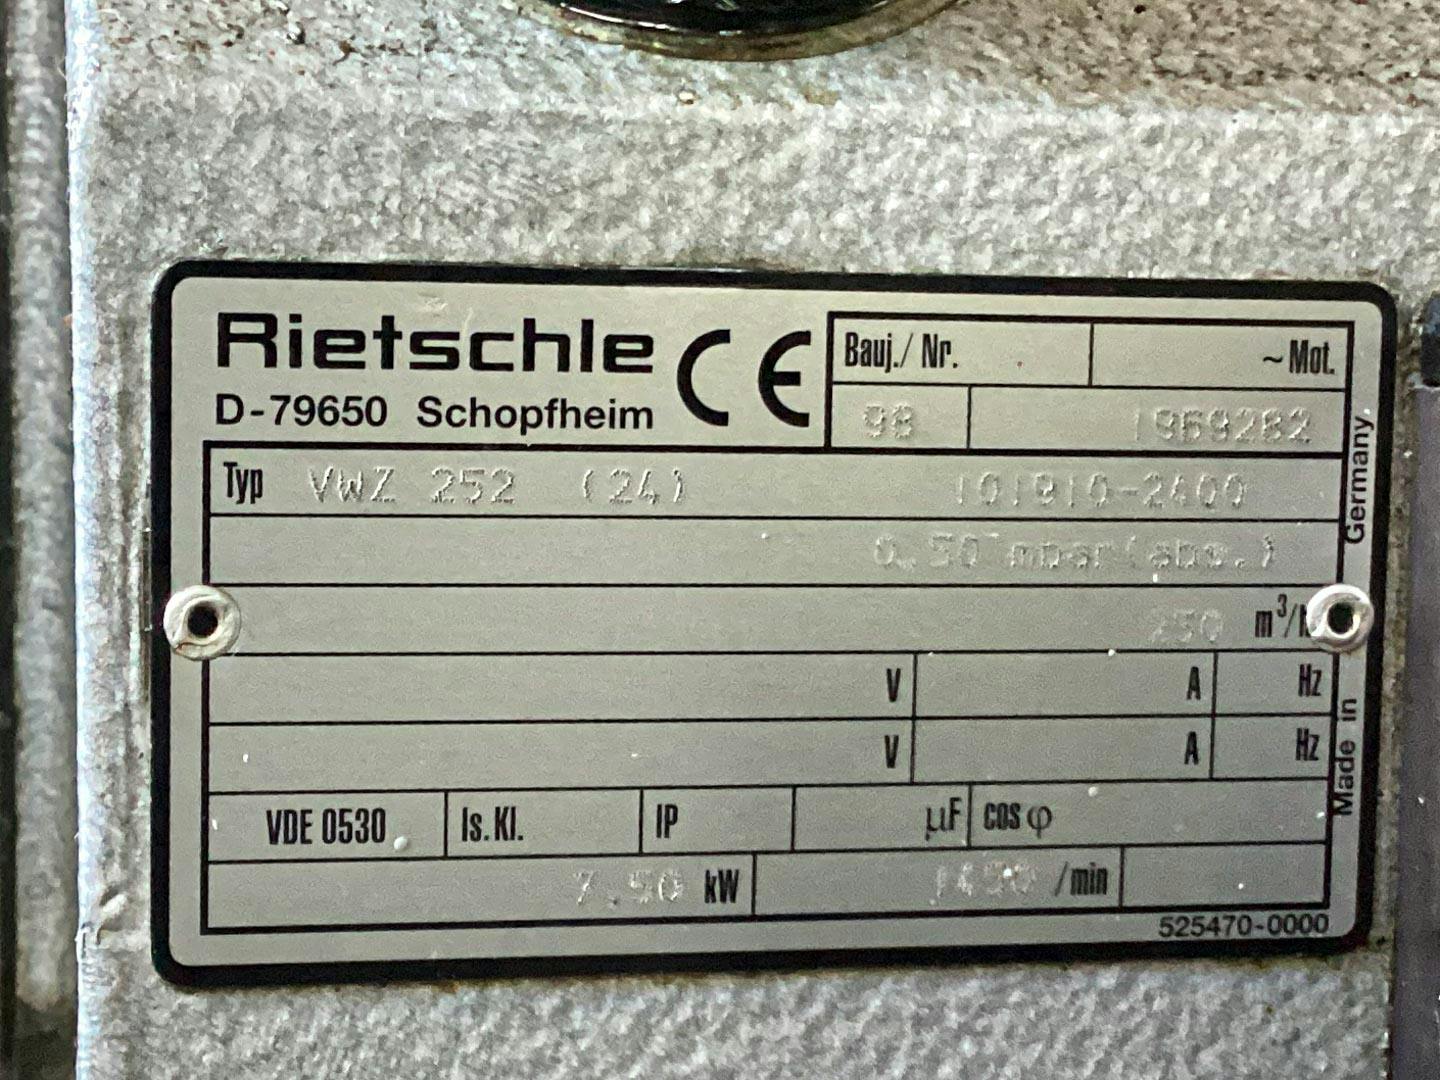 Rietschle VWZ 252 (24) - Pompe à vide - image 7